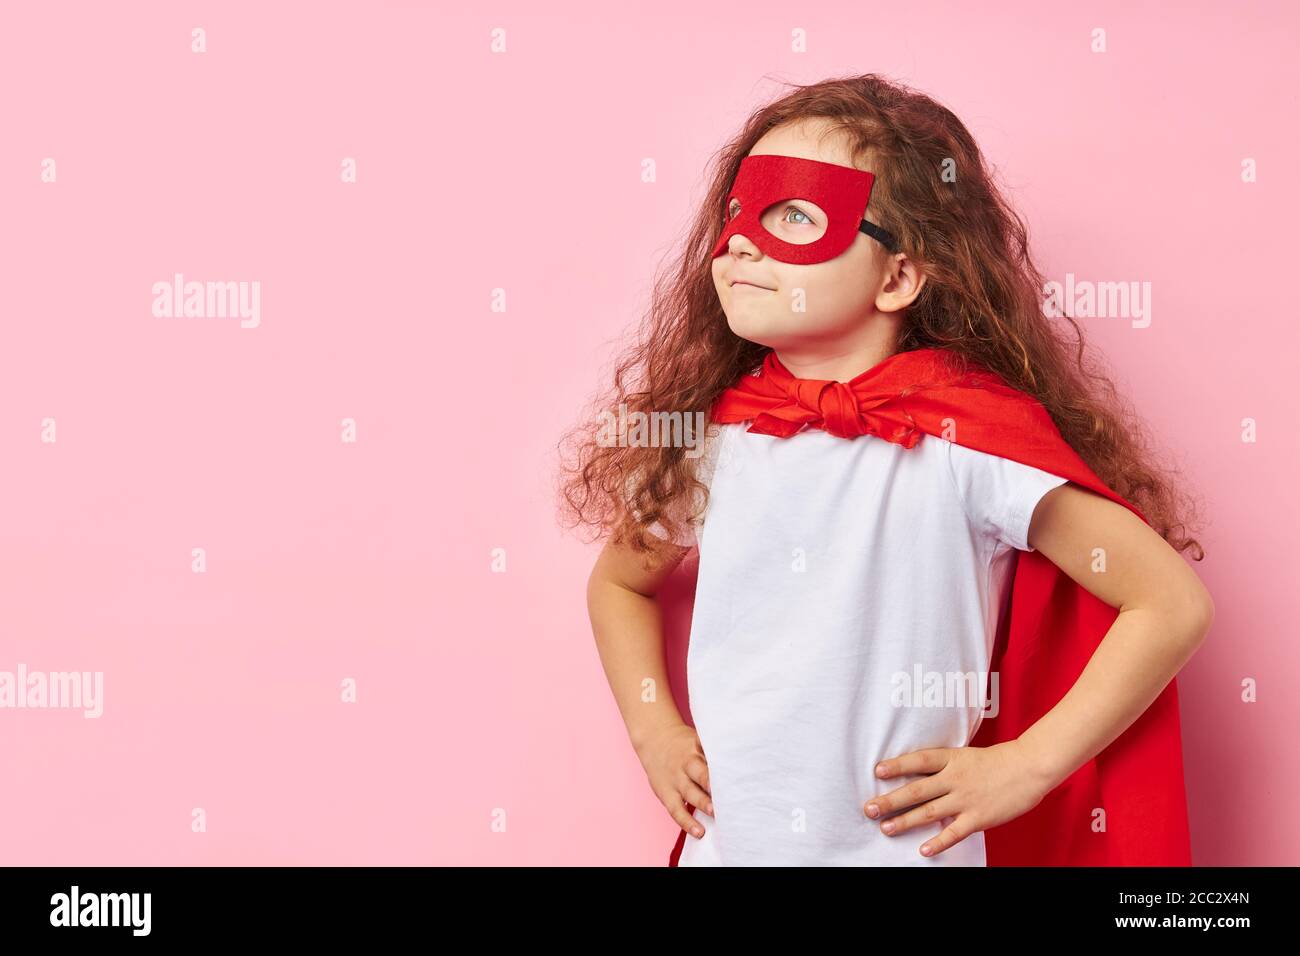 Die Fantasie des Superhelden. Kaukasischen Kind trägt rote Maske des Helden  und Mantel stehen suchen Seite, lockiges kleines Mädchen drwam zu  Superhelden sein Stockfotografie - Alamy